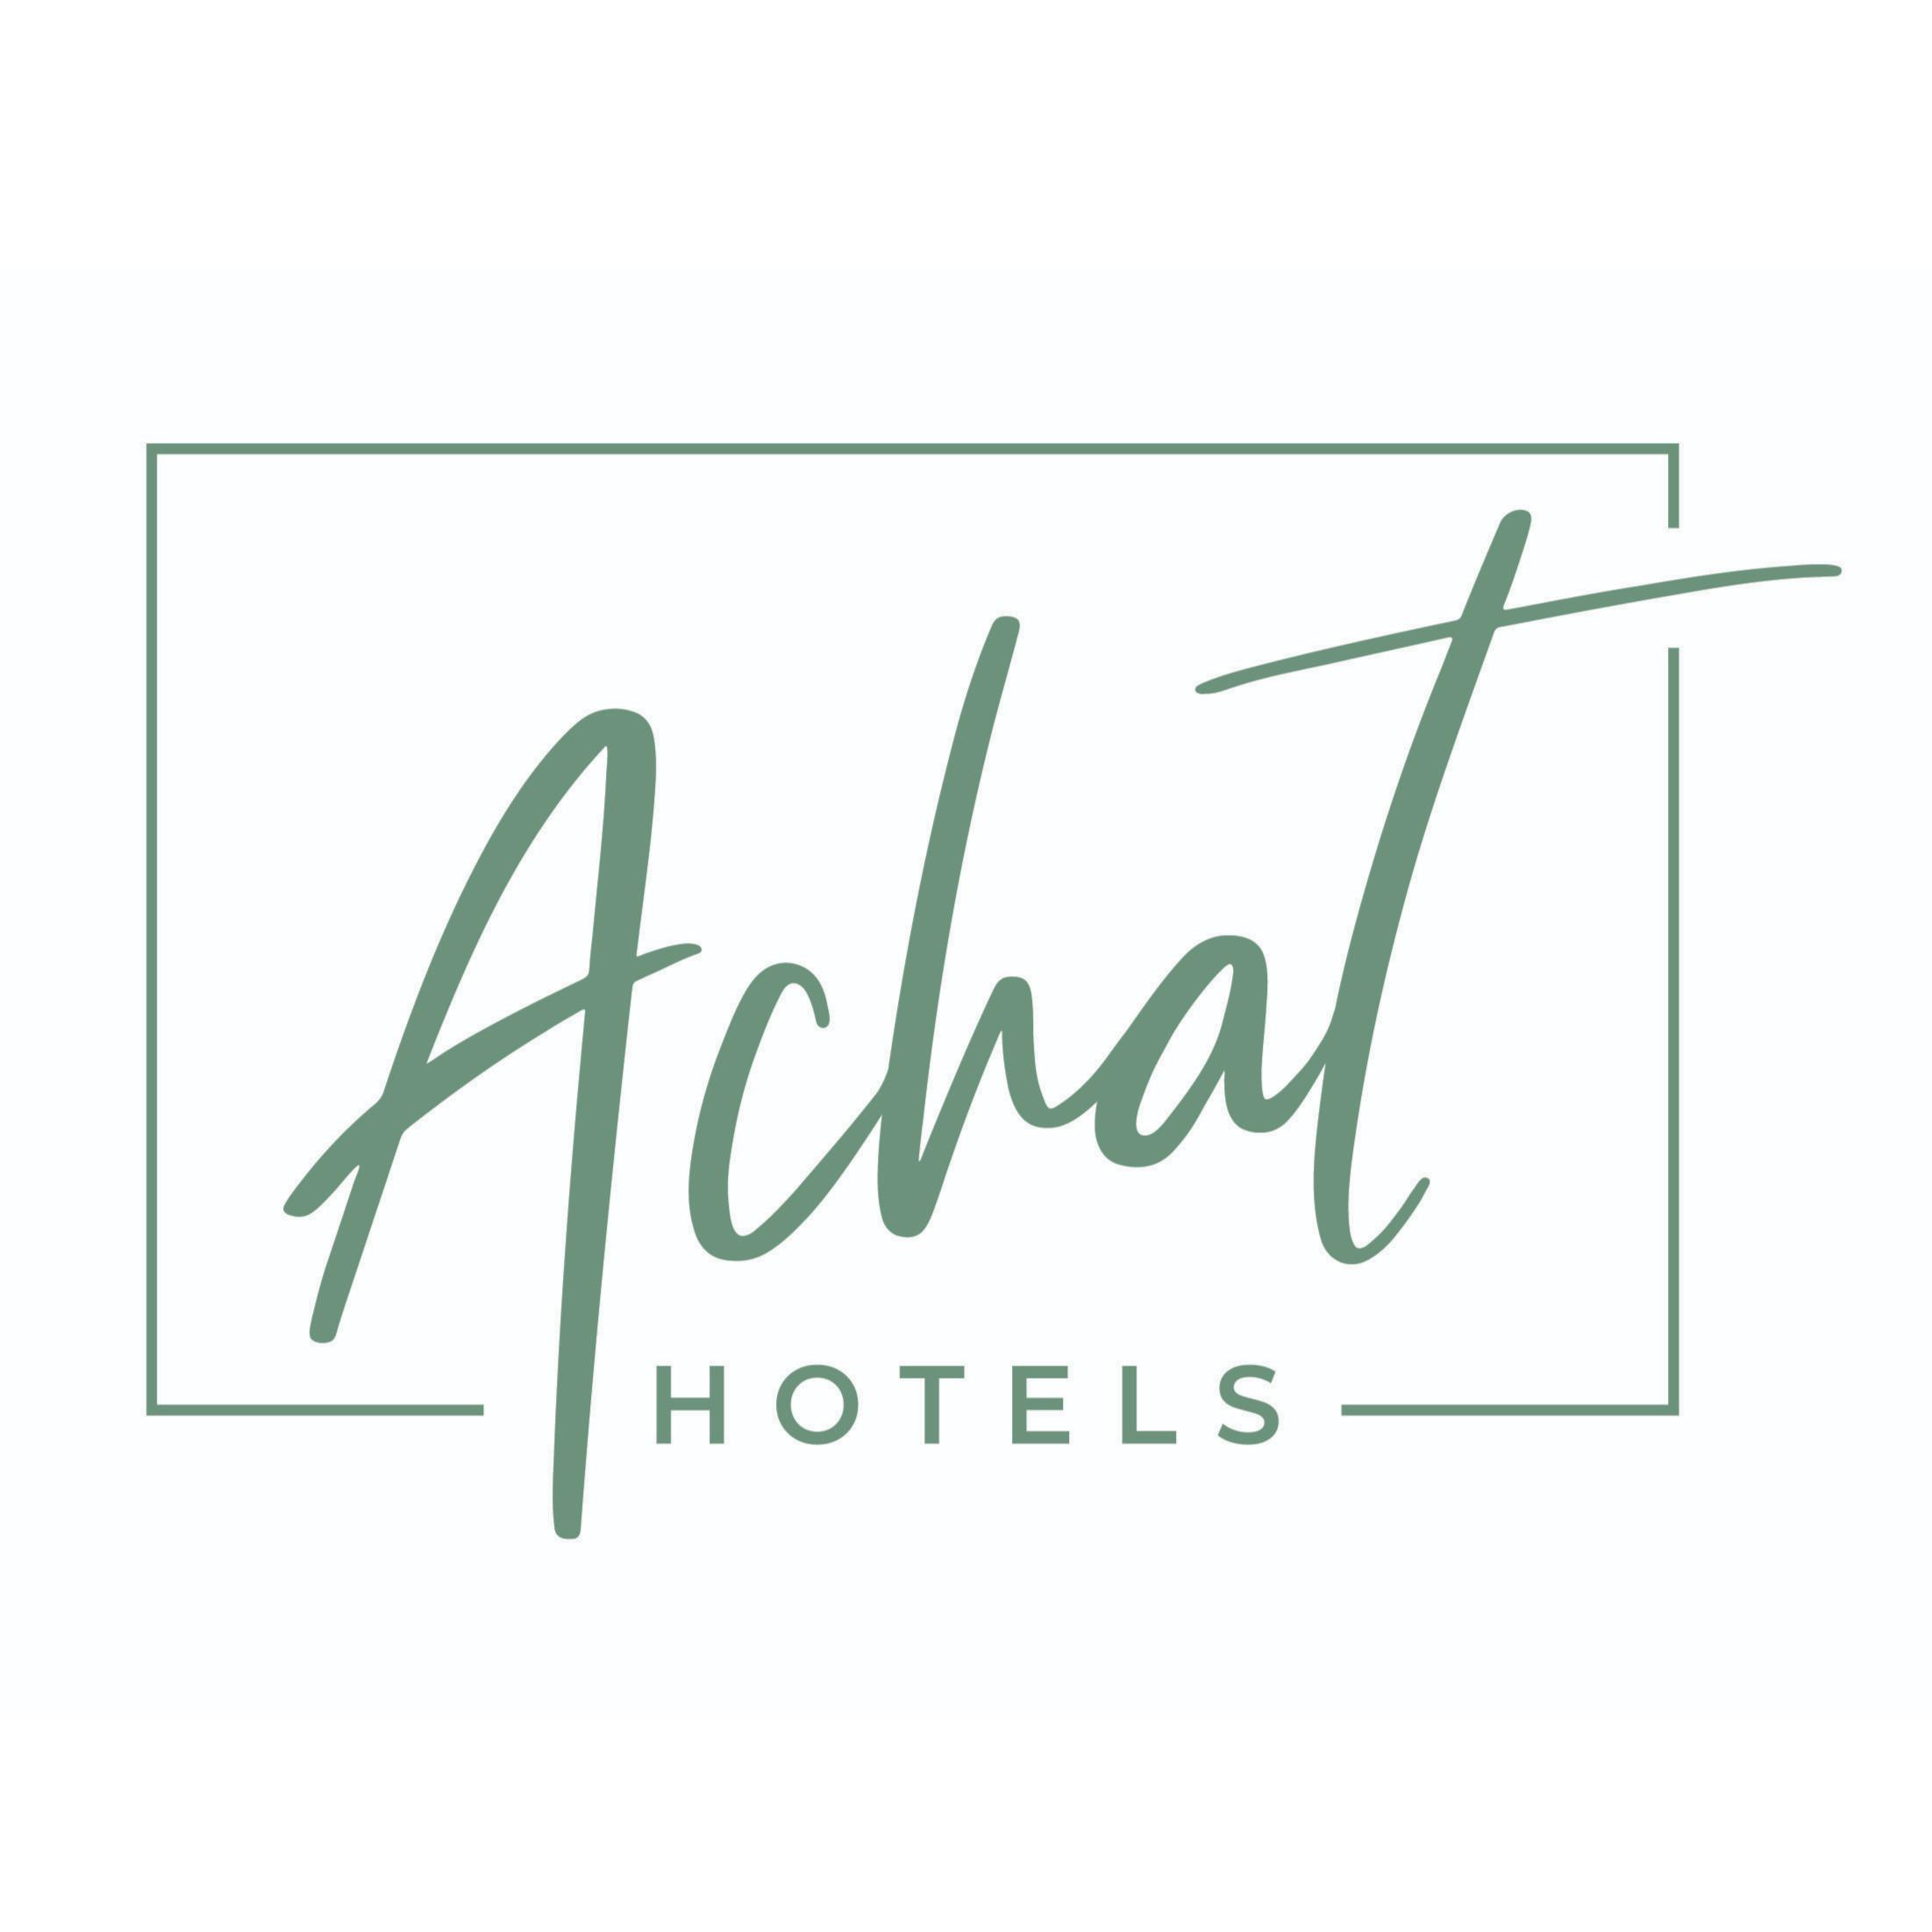 ACHAT Hotel Stuttgart Airport Messe in Stuttgart - Logo